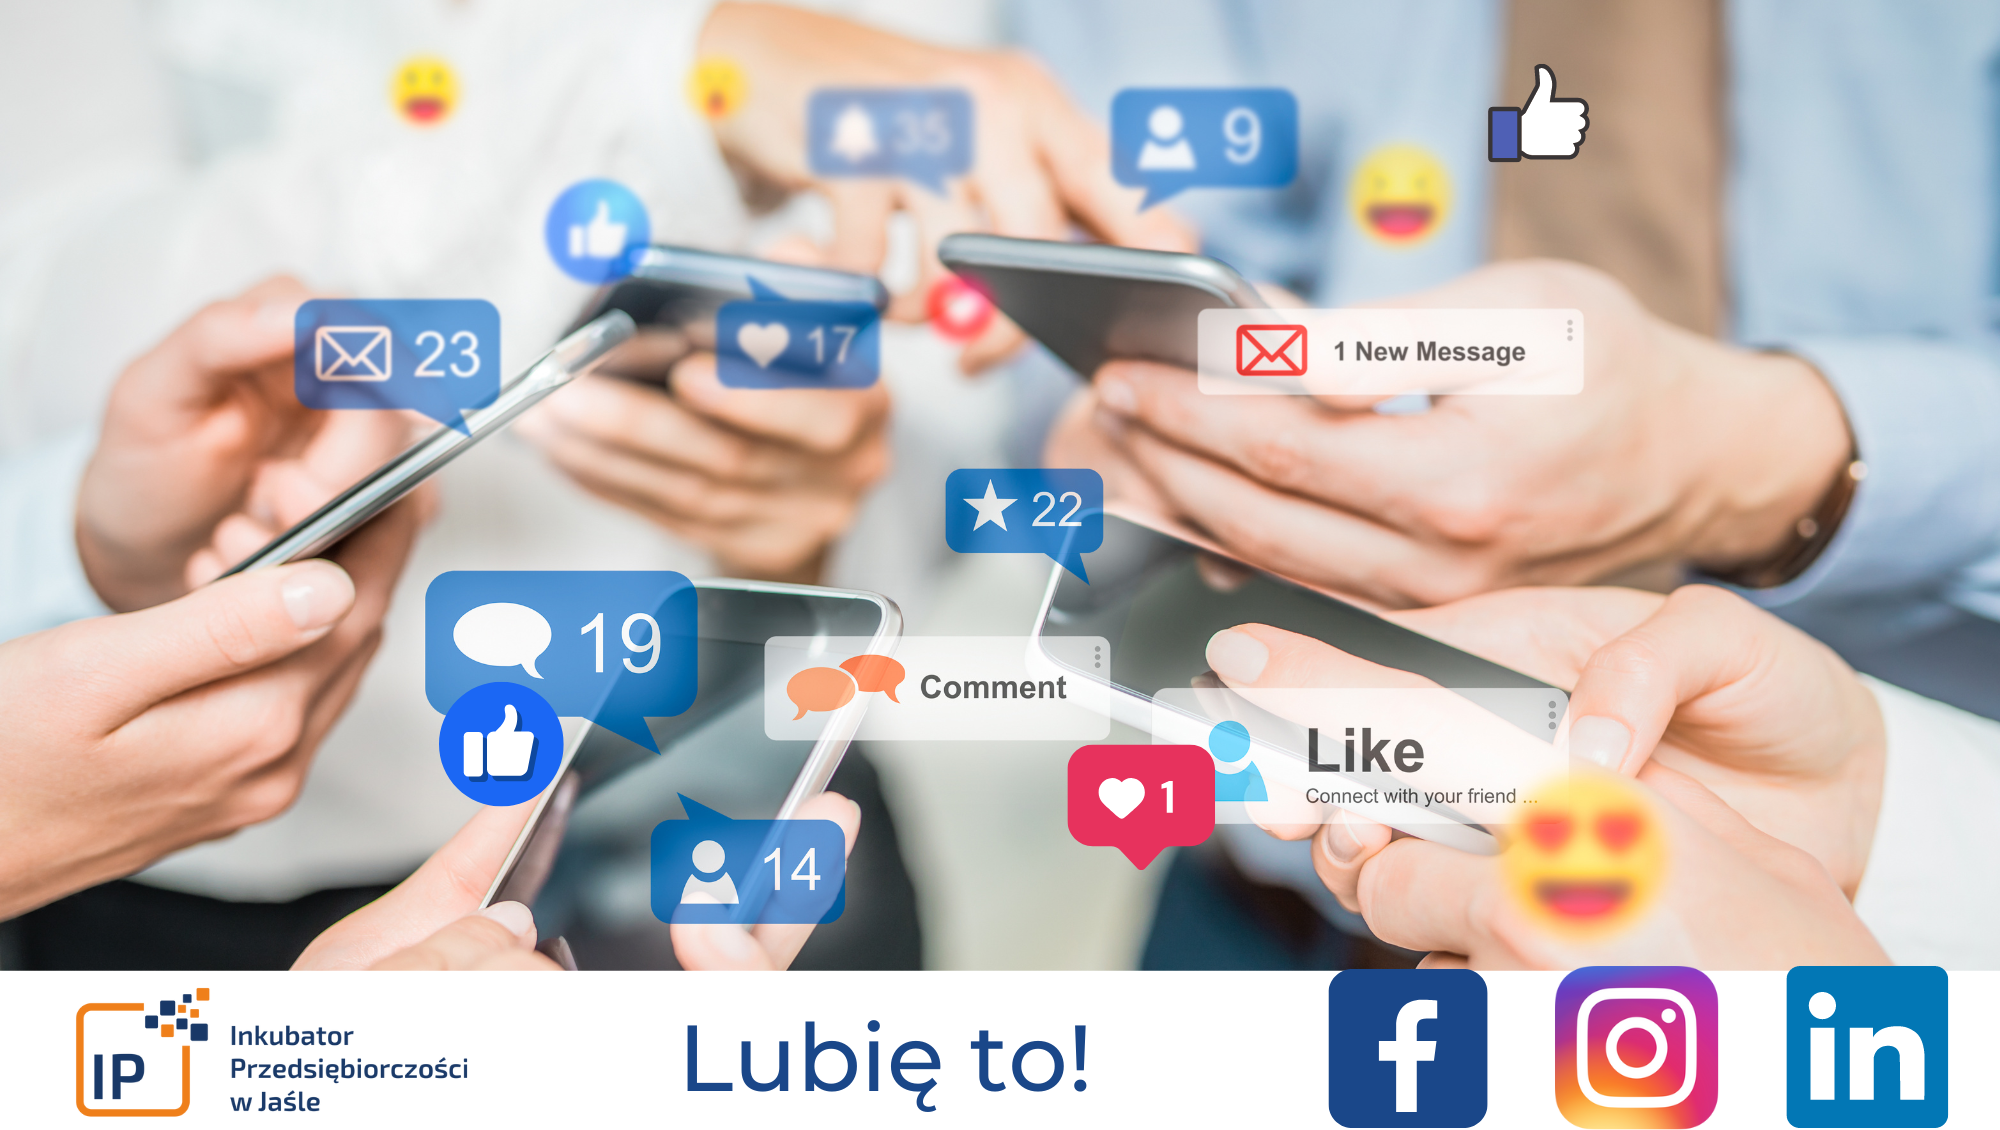 Inkubator Przedsiębiorczości w Jaśle w mediach społecznościowych